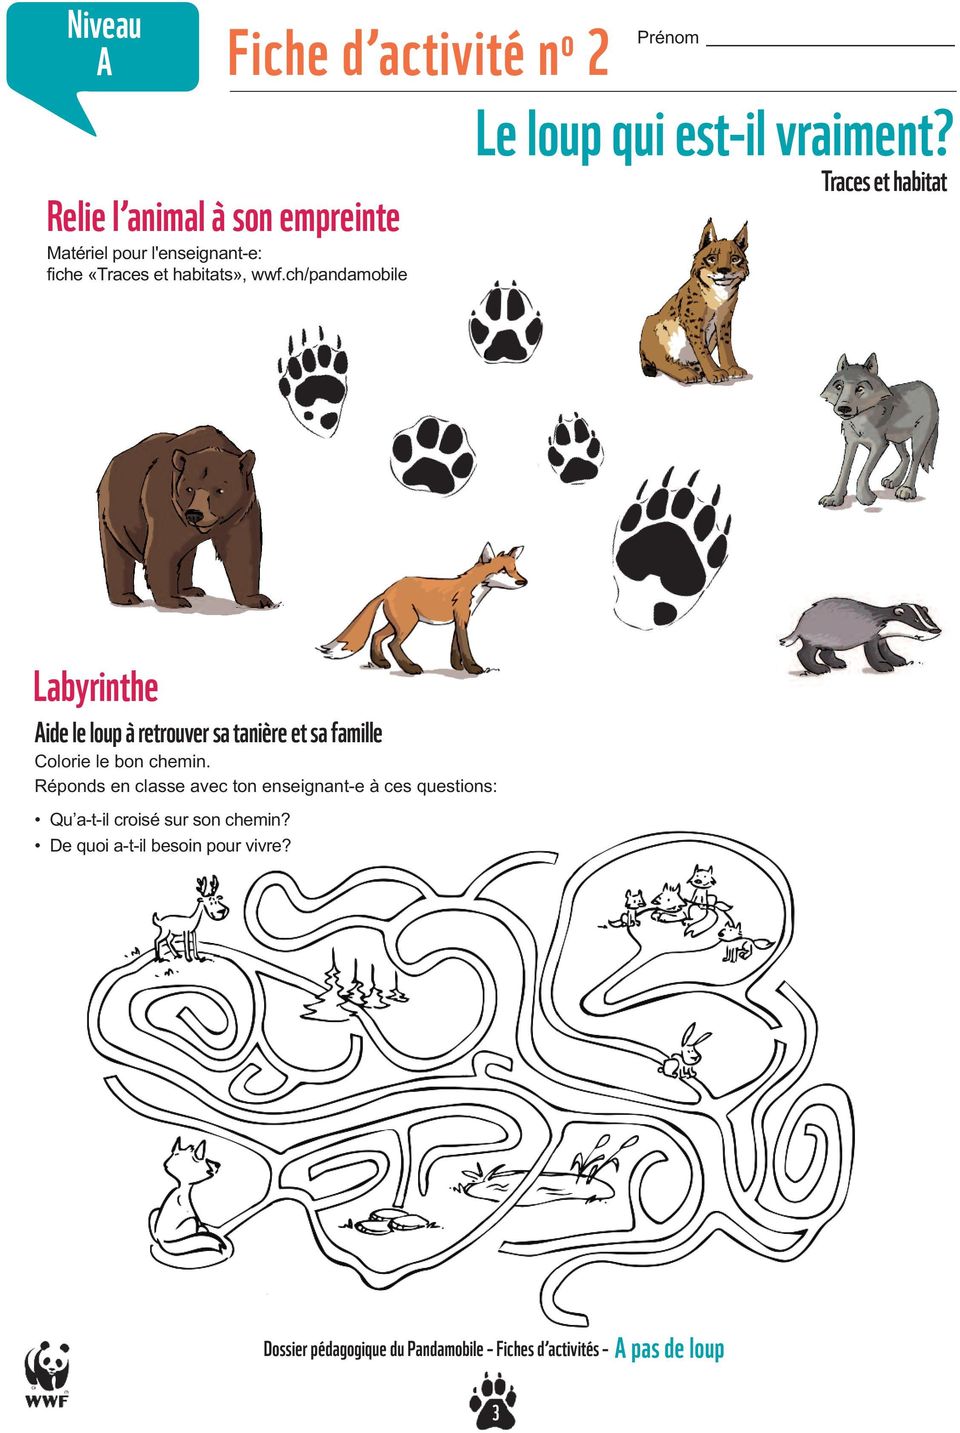 Traces et habitat Labyrinthe Aide le loup à retrouver sa tanière et sa famille Colorie le bon